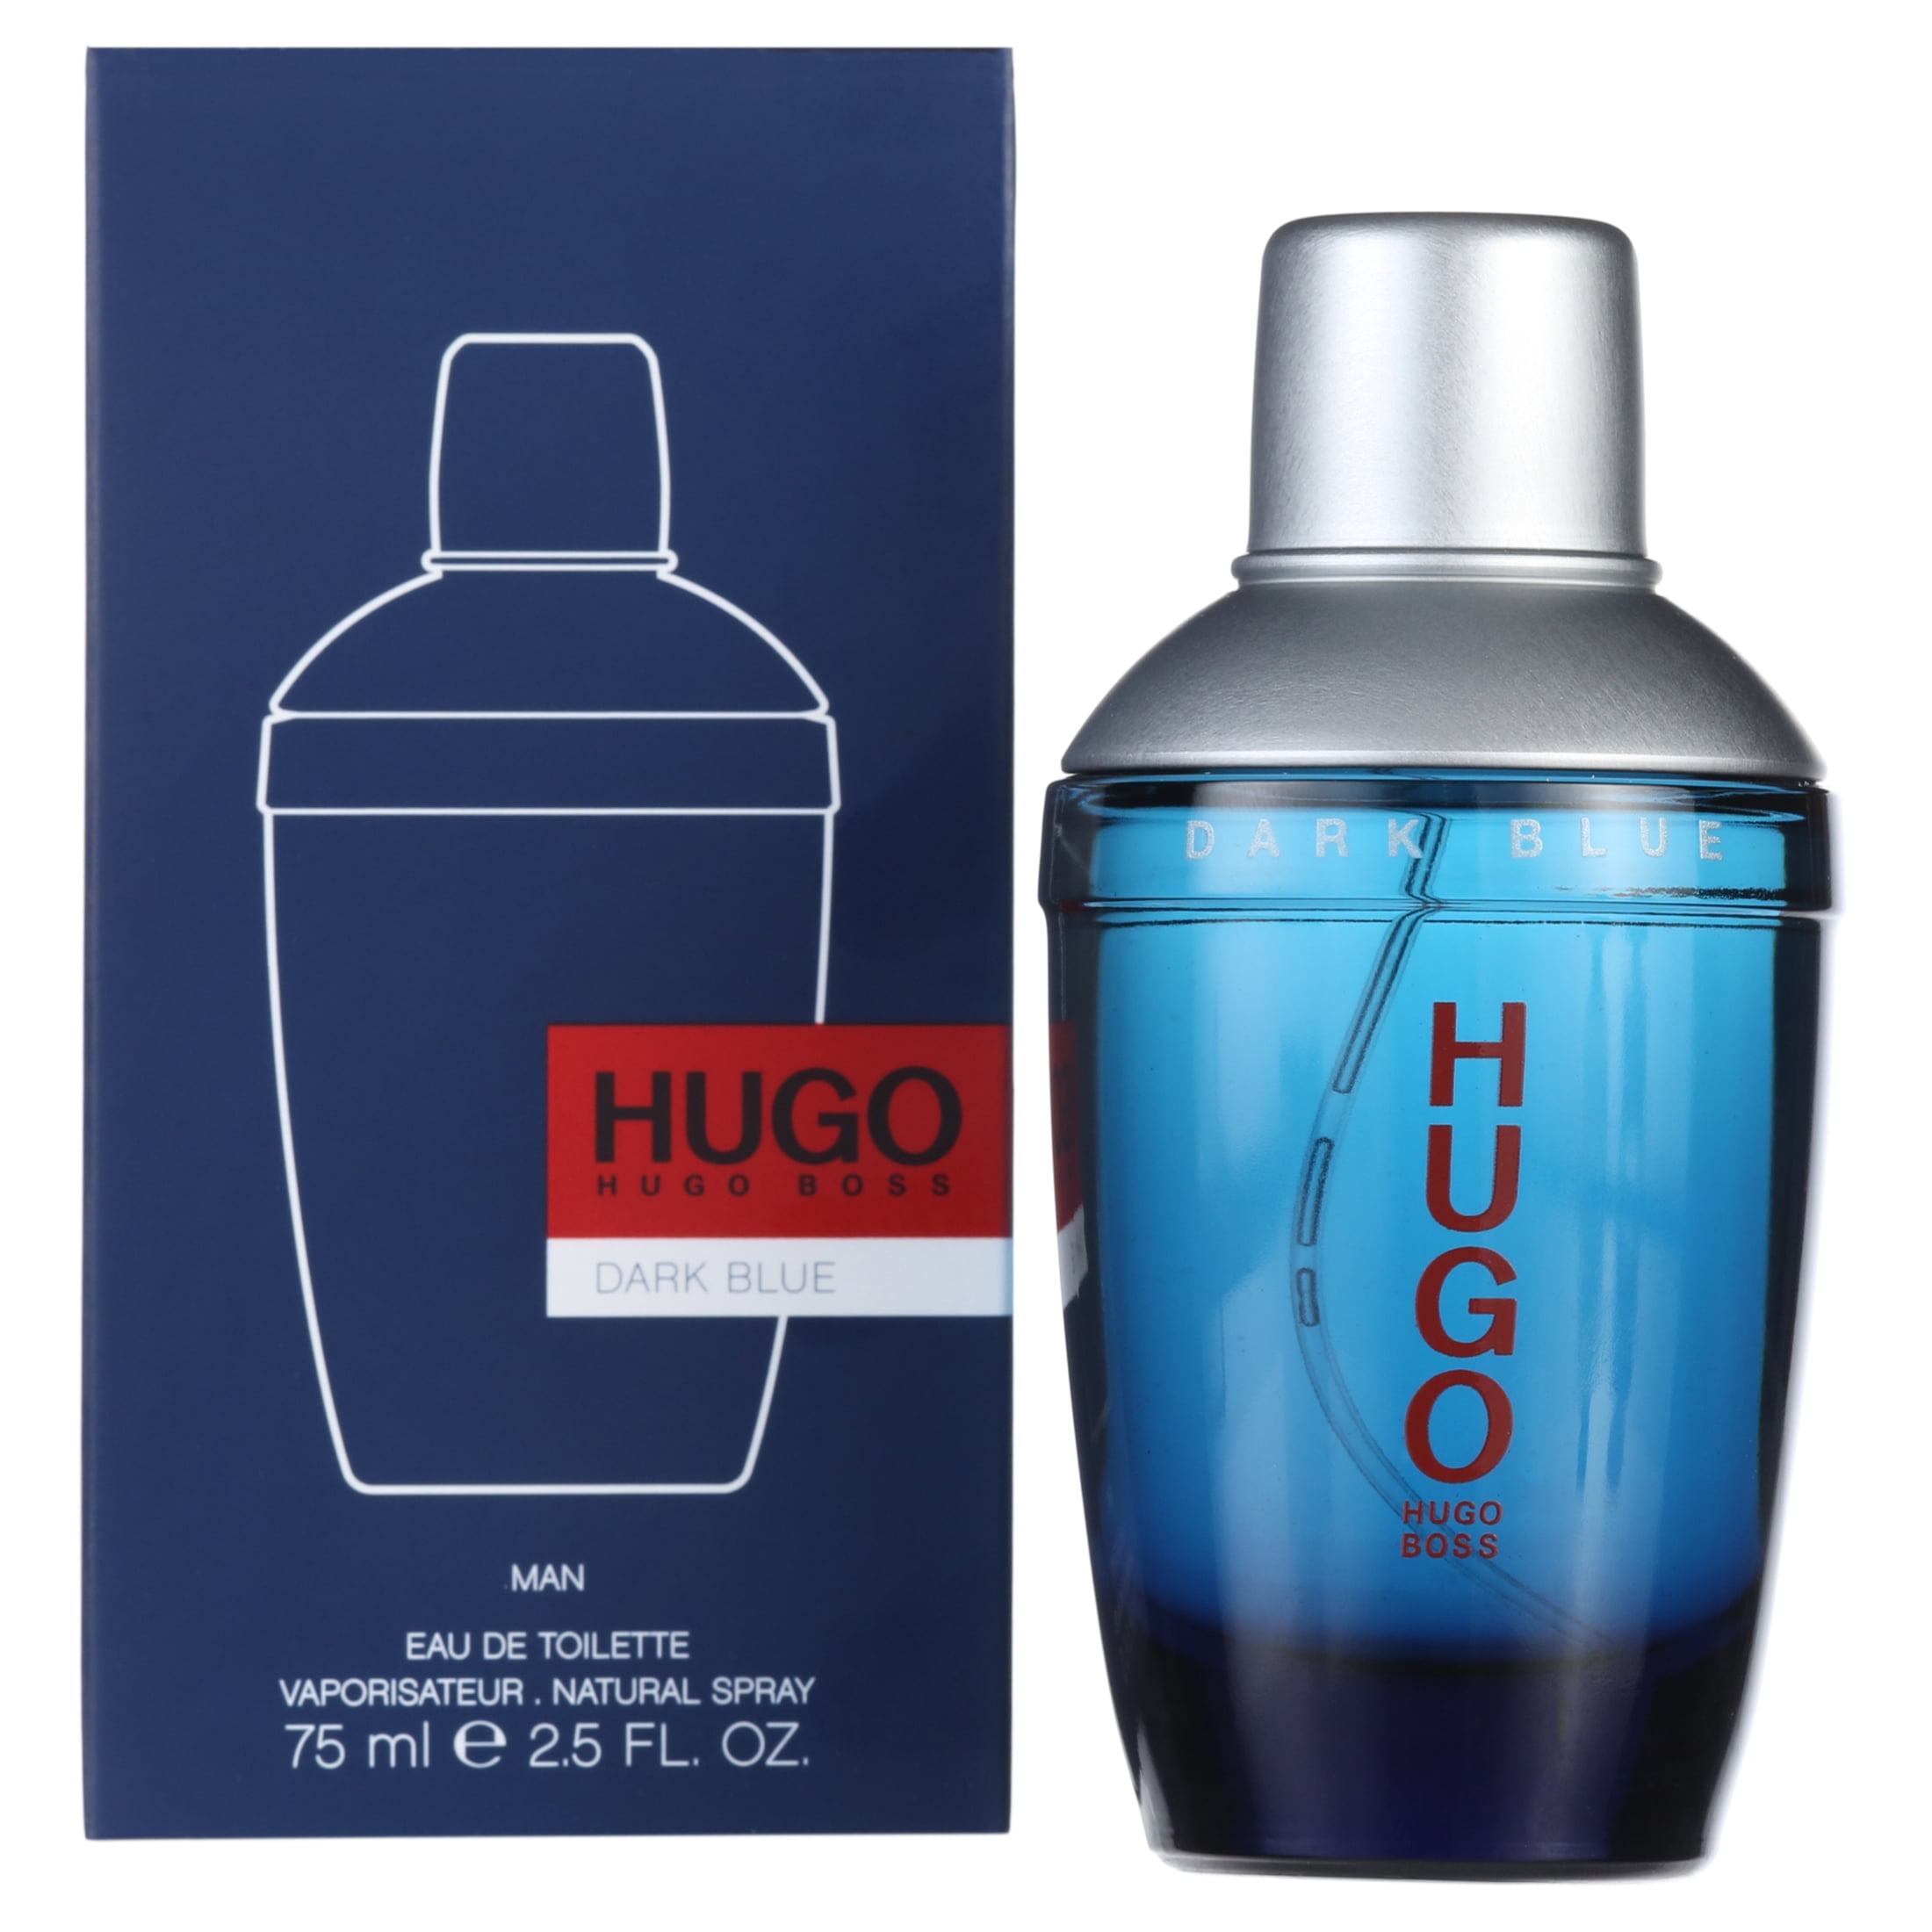 HUGO BOSS Hugo Dark Blue Eau de Toilette, Cologne for Men, 2.5 oz